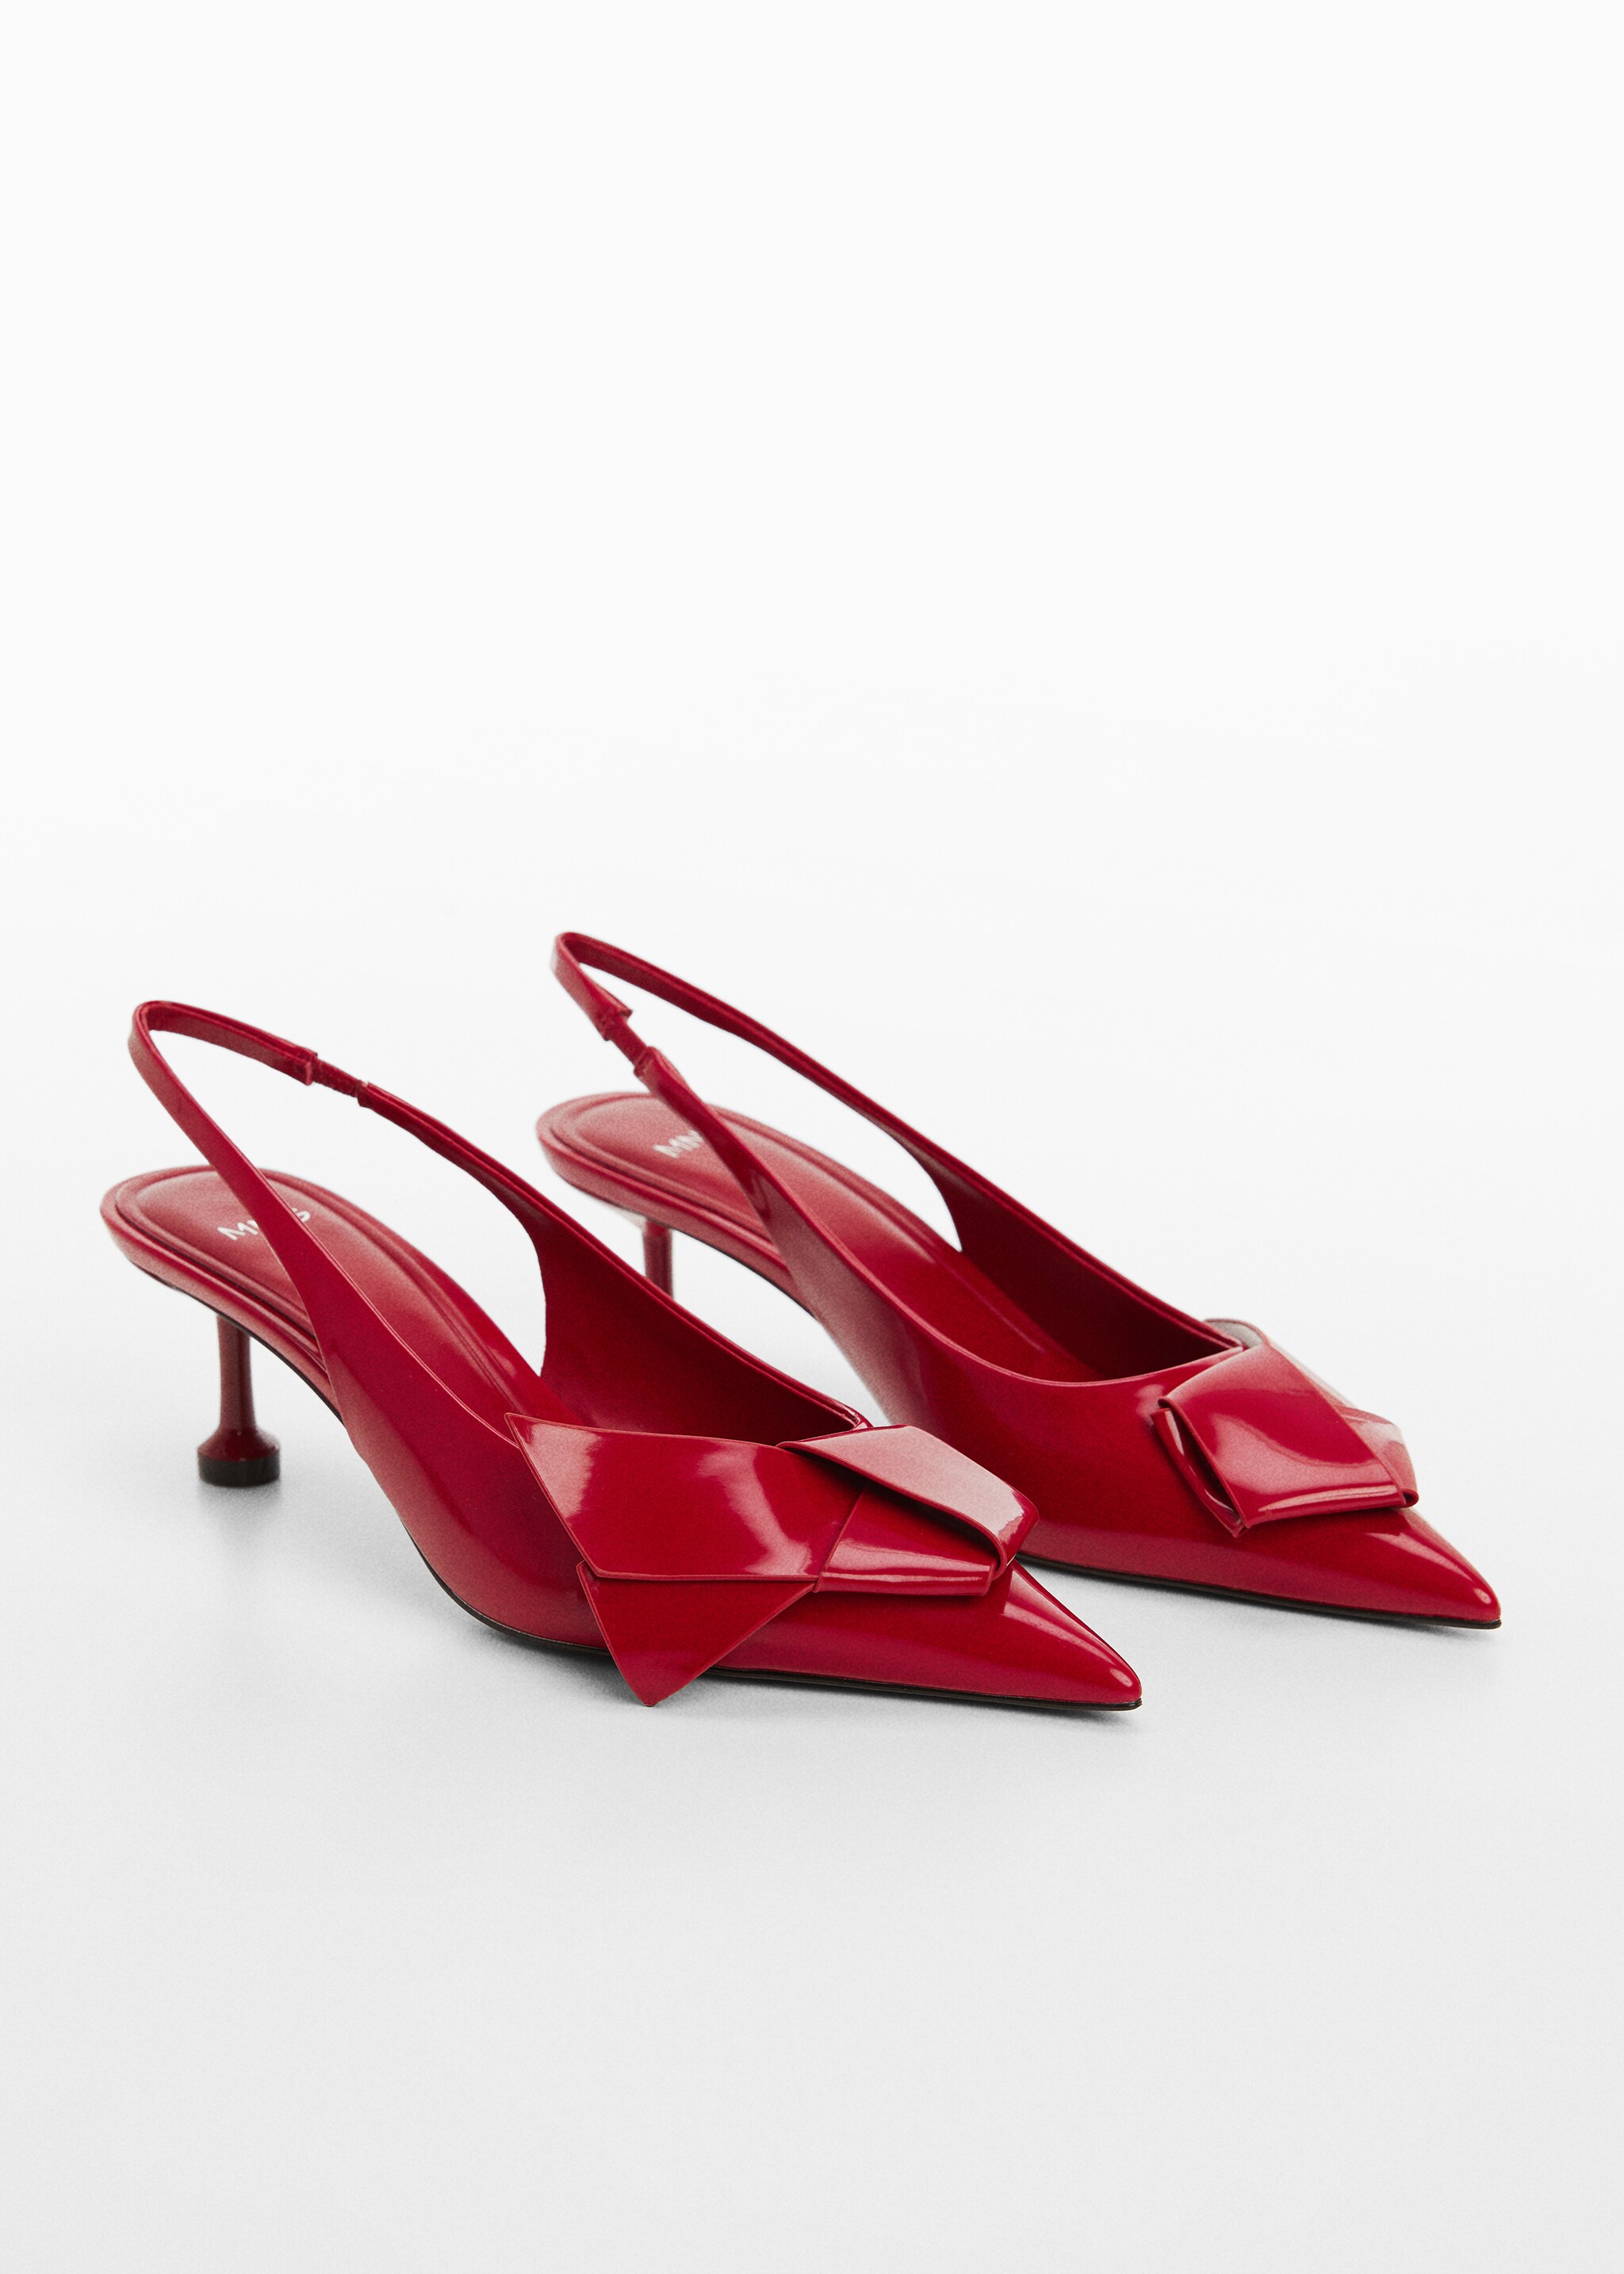 Bow-heeled shoes - Medium plane